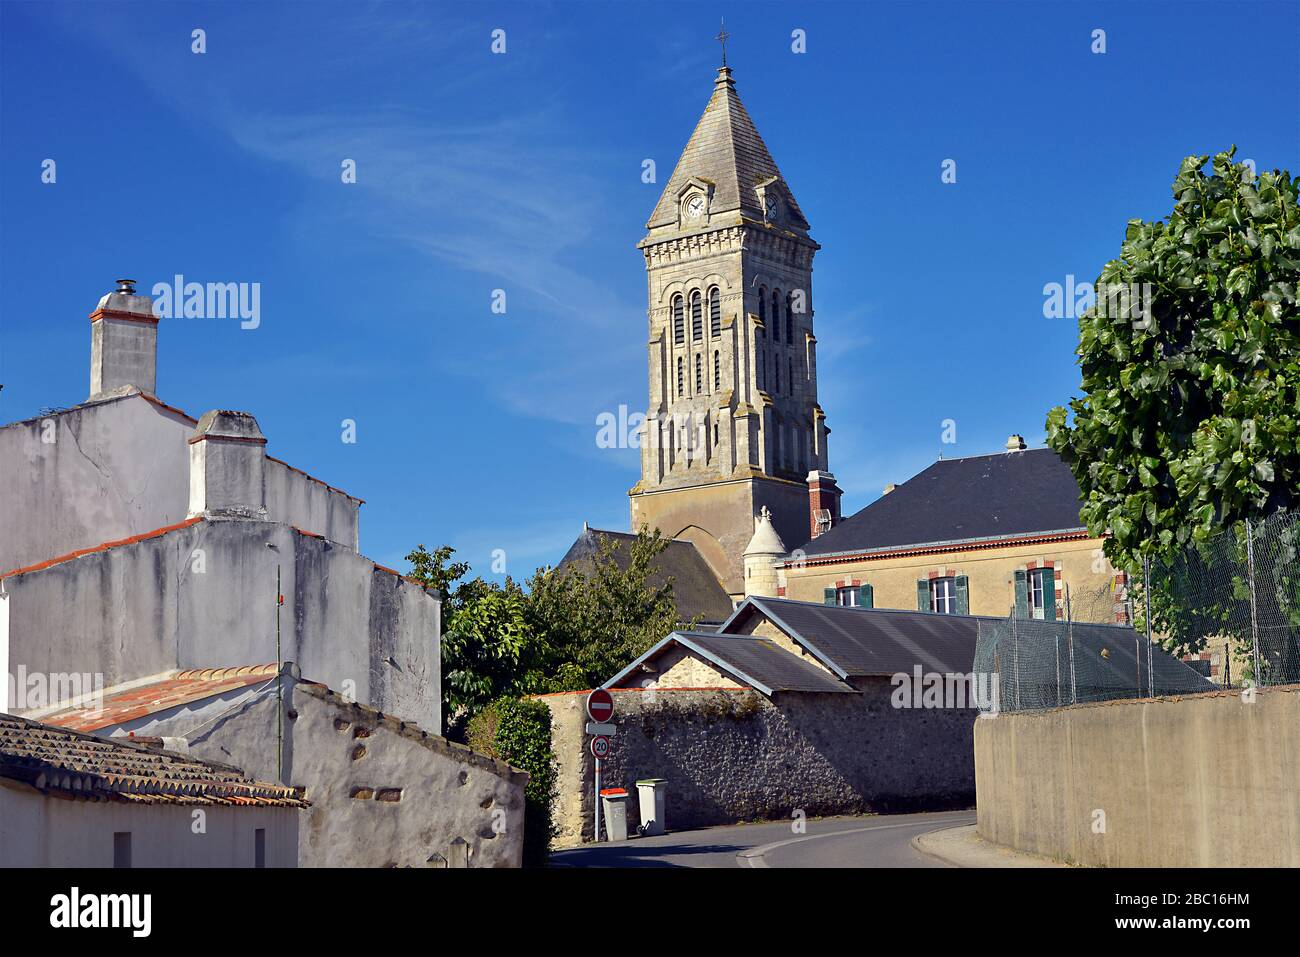 Bell tower church of Noirmoutier en l’Ile in Pays de la Loire, region in western France Stock Photo